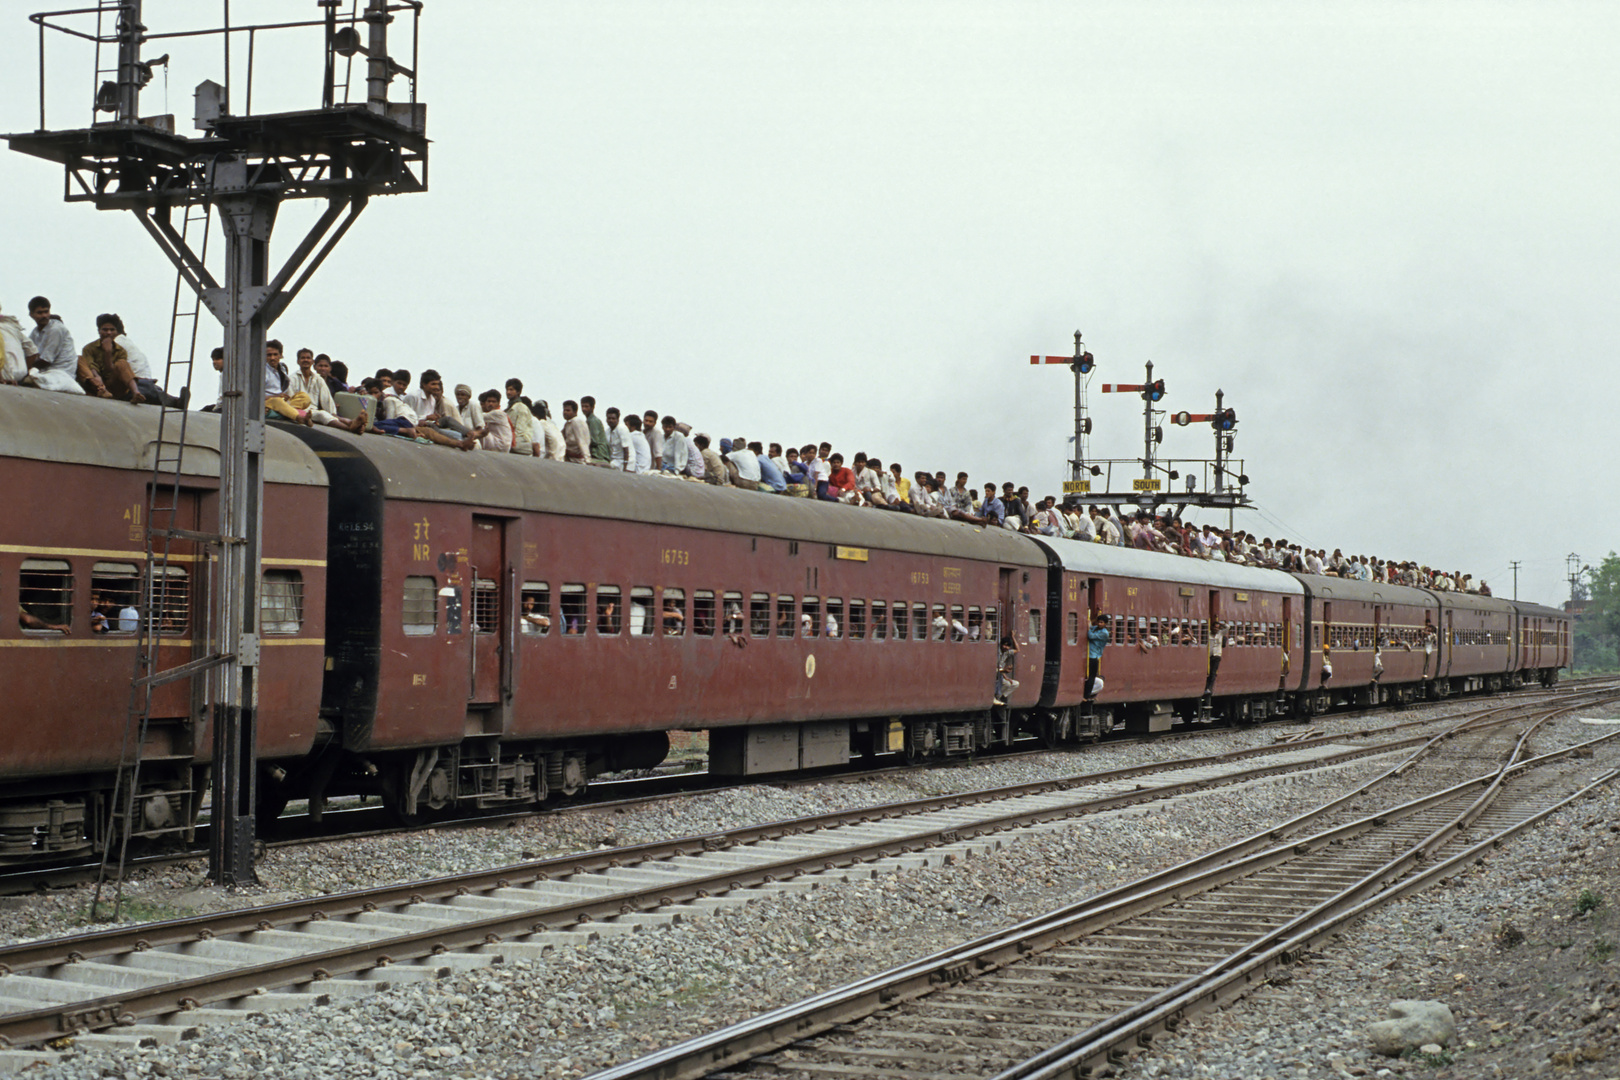 012-Indien gut besetzt April 1994 Ein9-Rupien -Ticket gab es nicht! Die reisen alle für 0 Rupien...